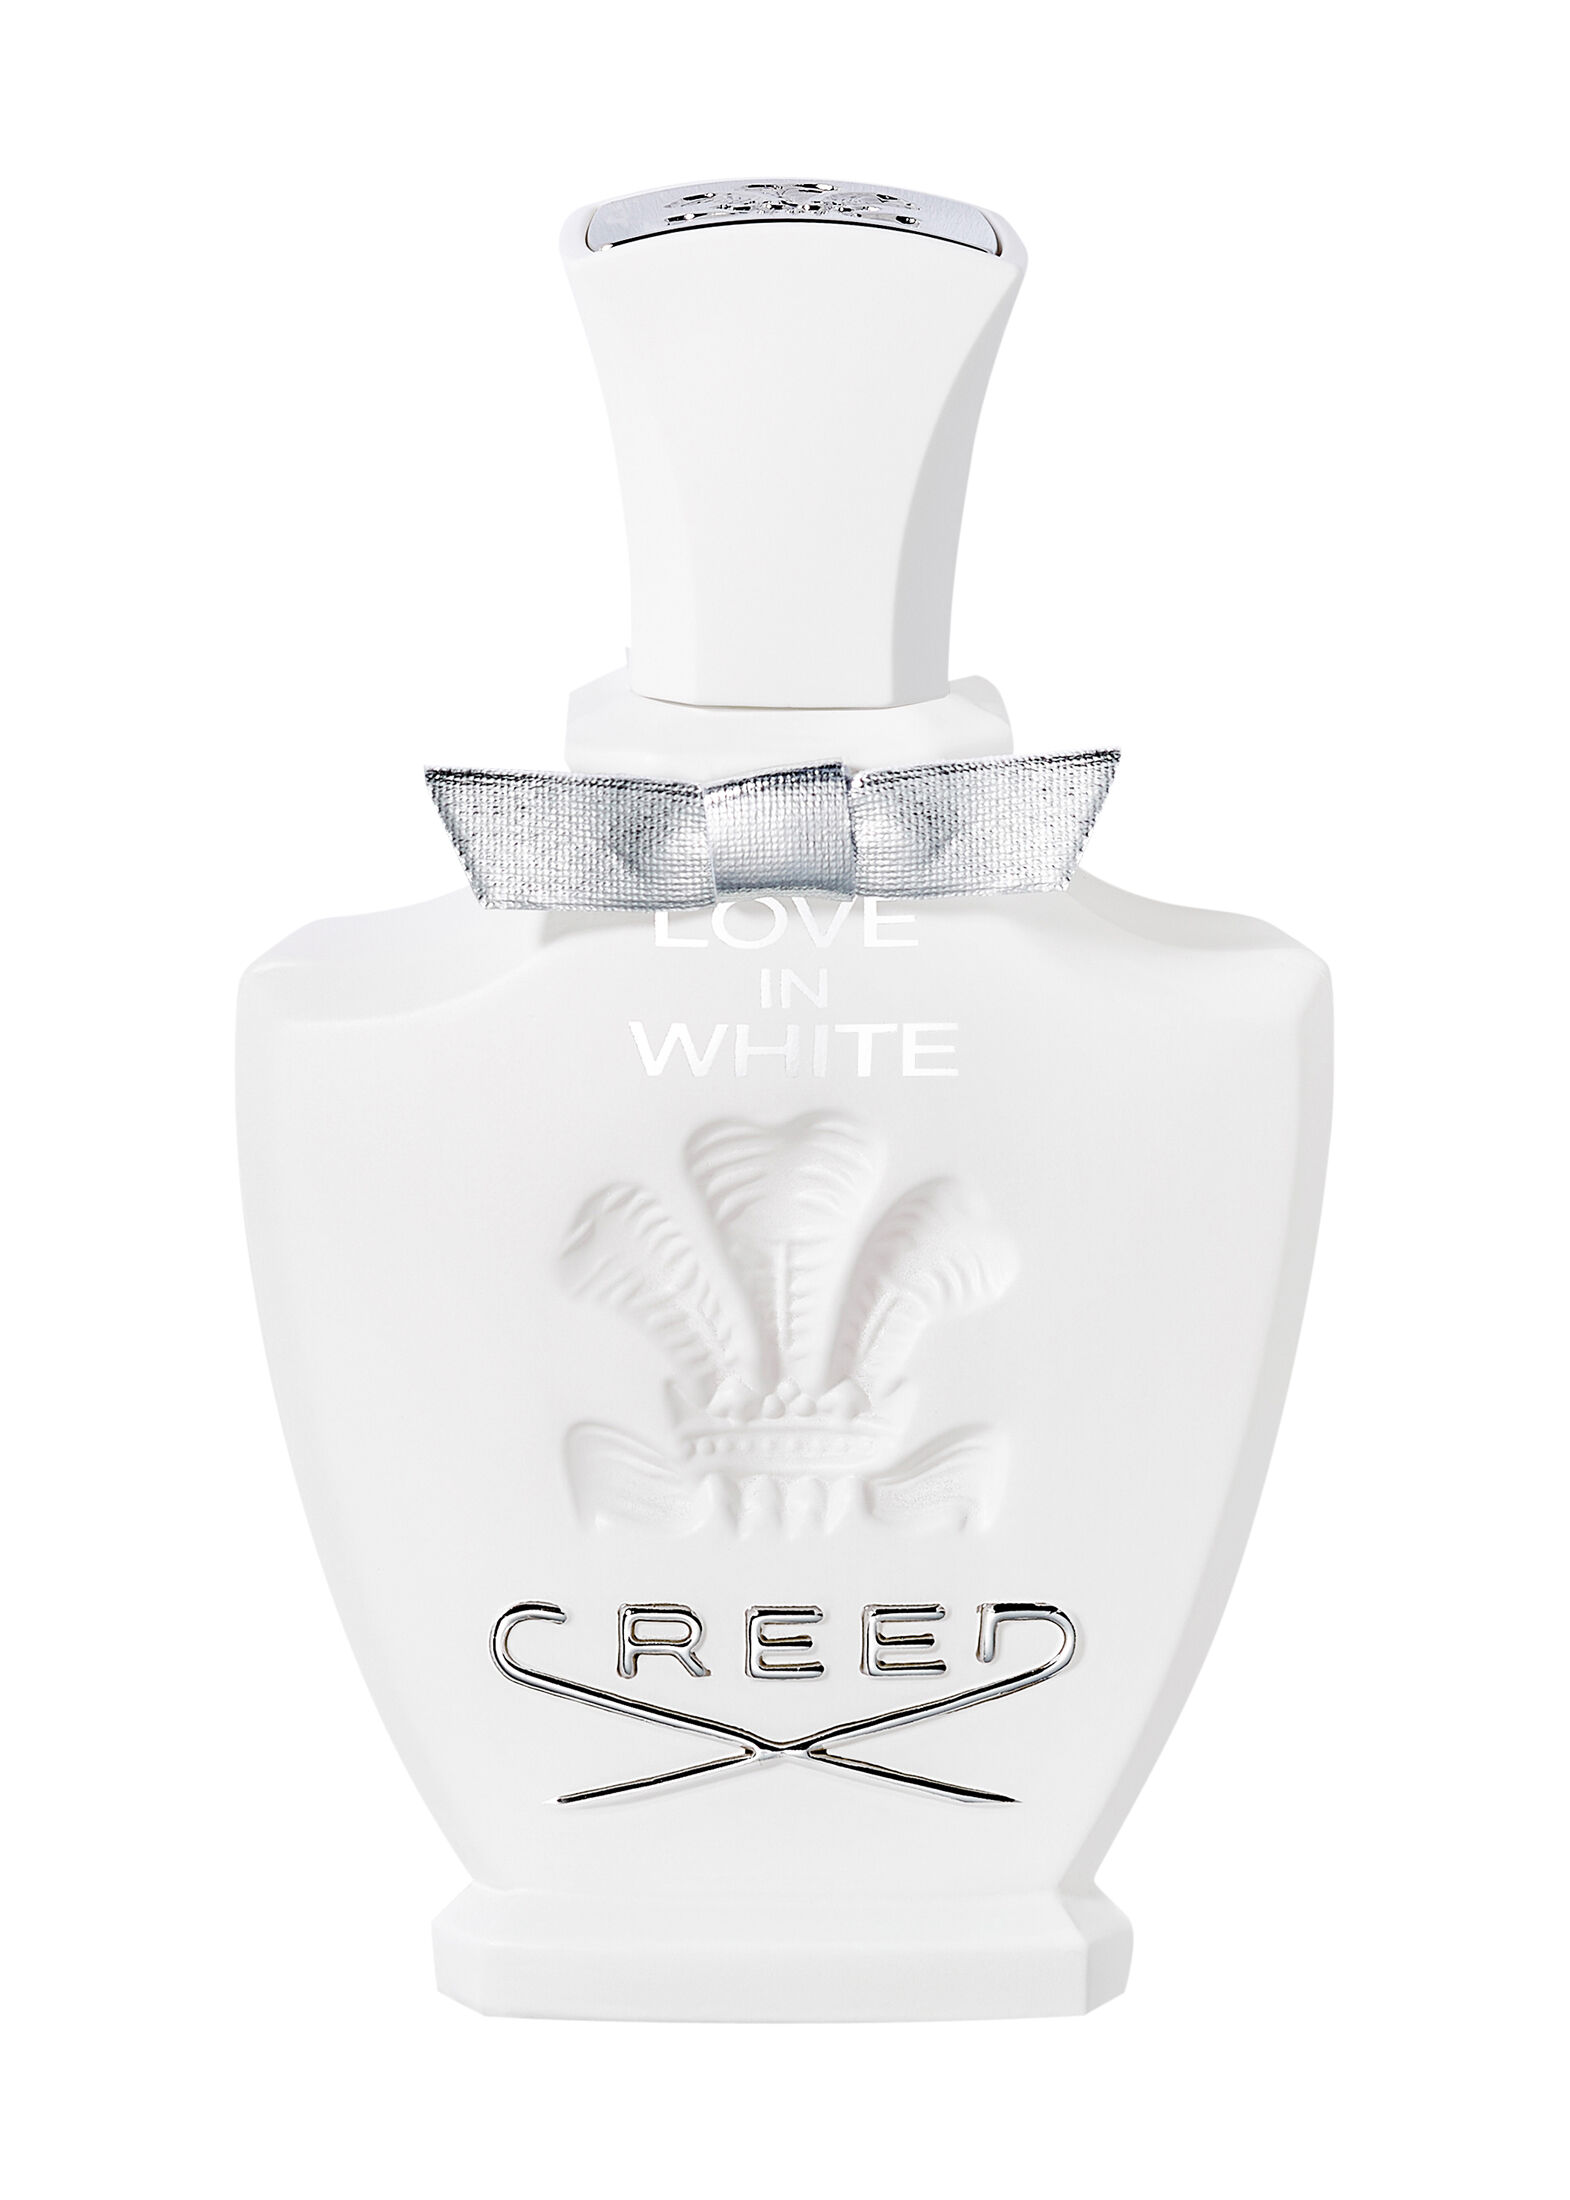 Вайт лове. Парфюмерная вода Creed Love in White, 75 мл. Creed духи женские Love in White. Creed "Love in White", 75 ml (тестер). Духи Крид лав ин Вайт.